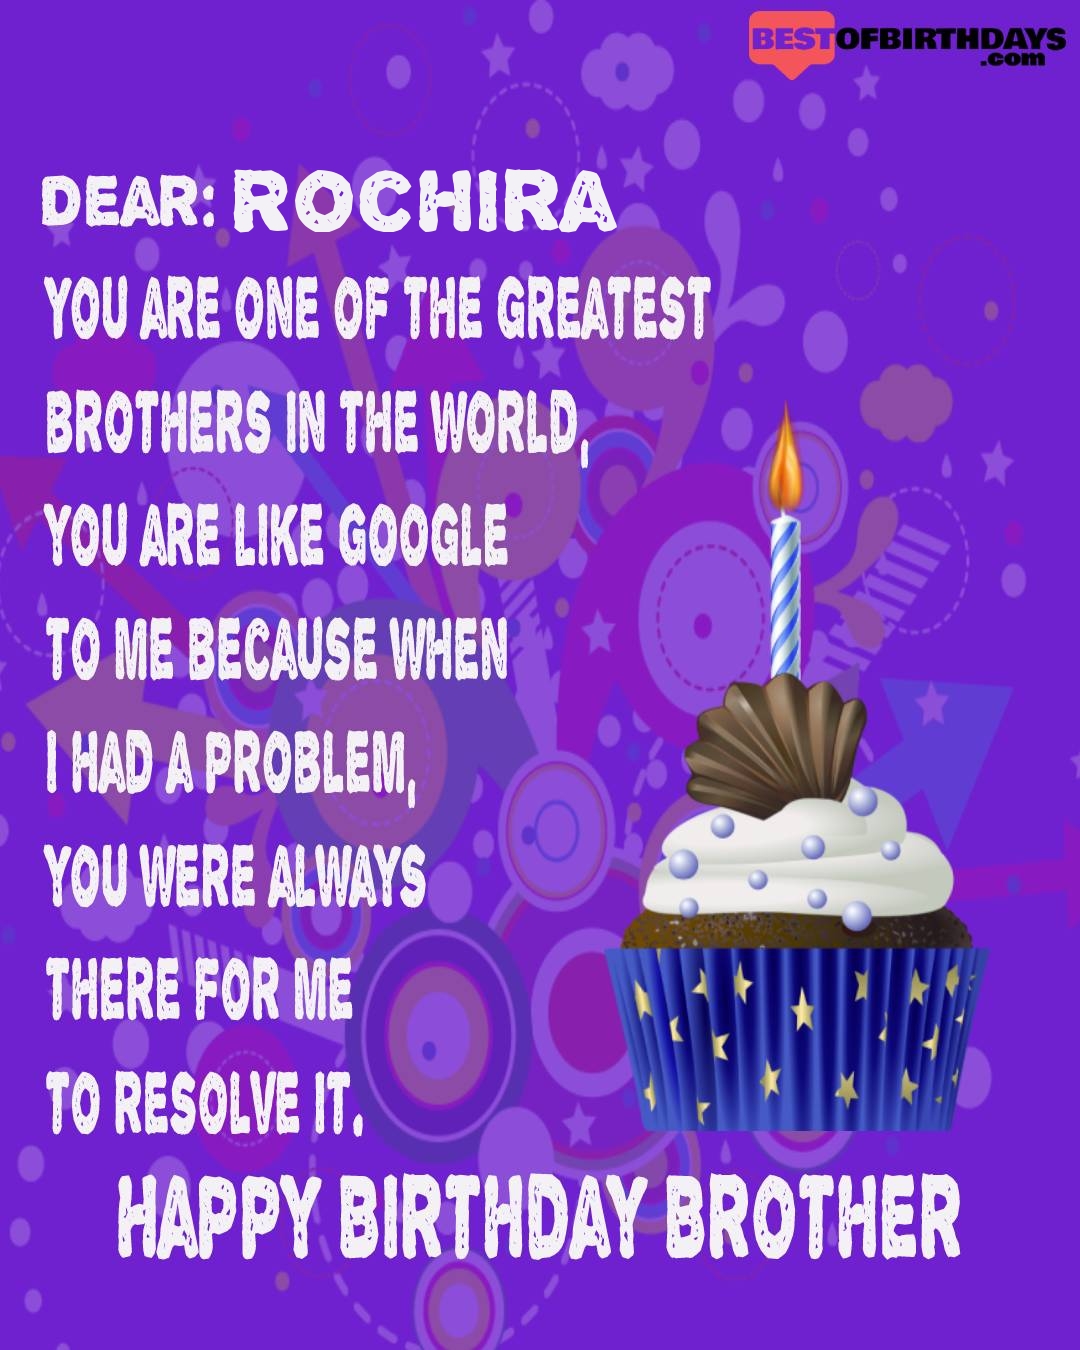 Happy birthday rochira bhai brother bro